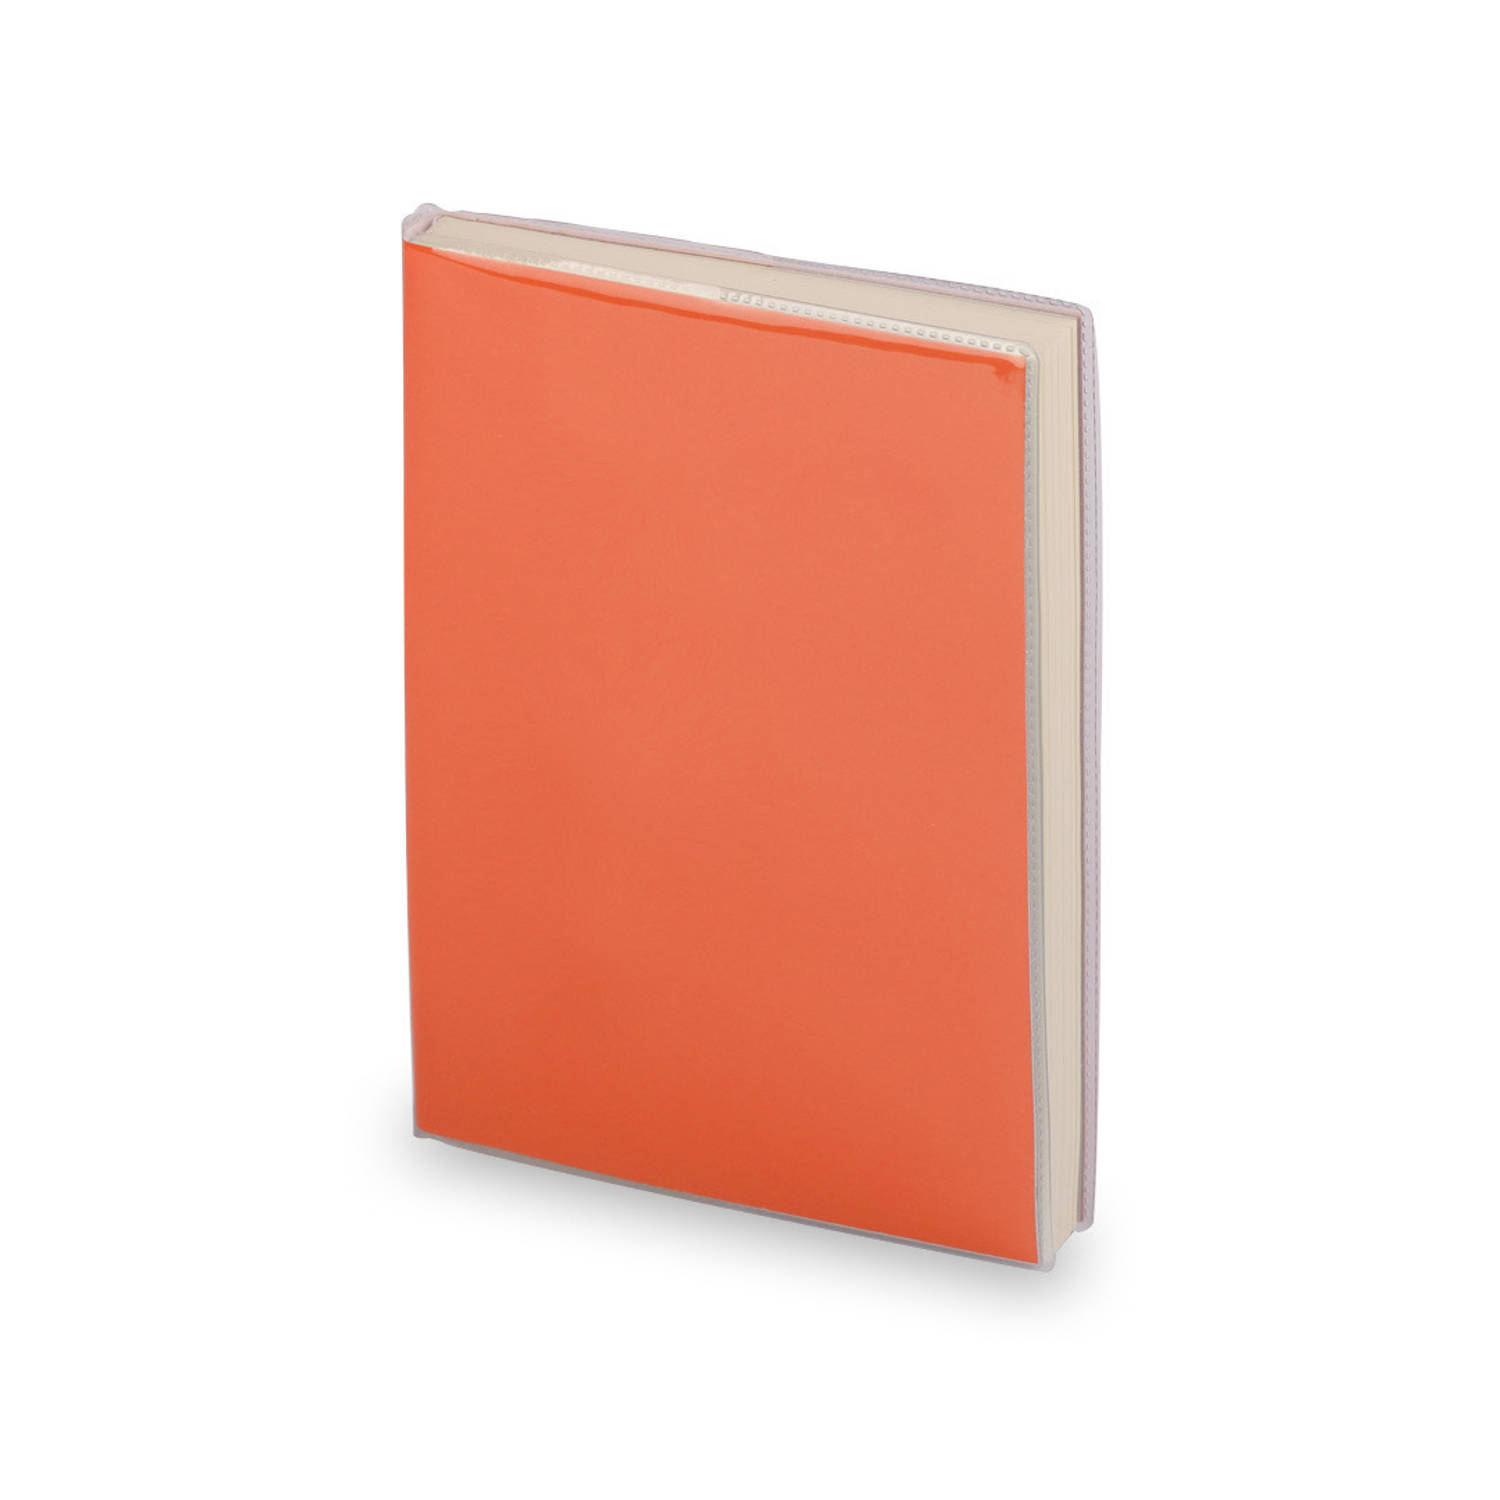 Notitieblokje zachte kaft oranje met plastic hoes 10 x 13 cm - Notitieboek